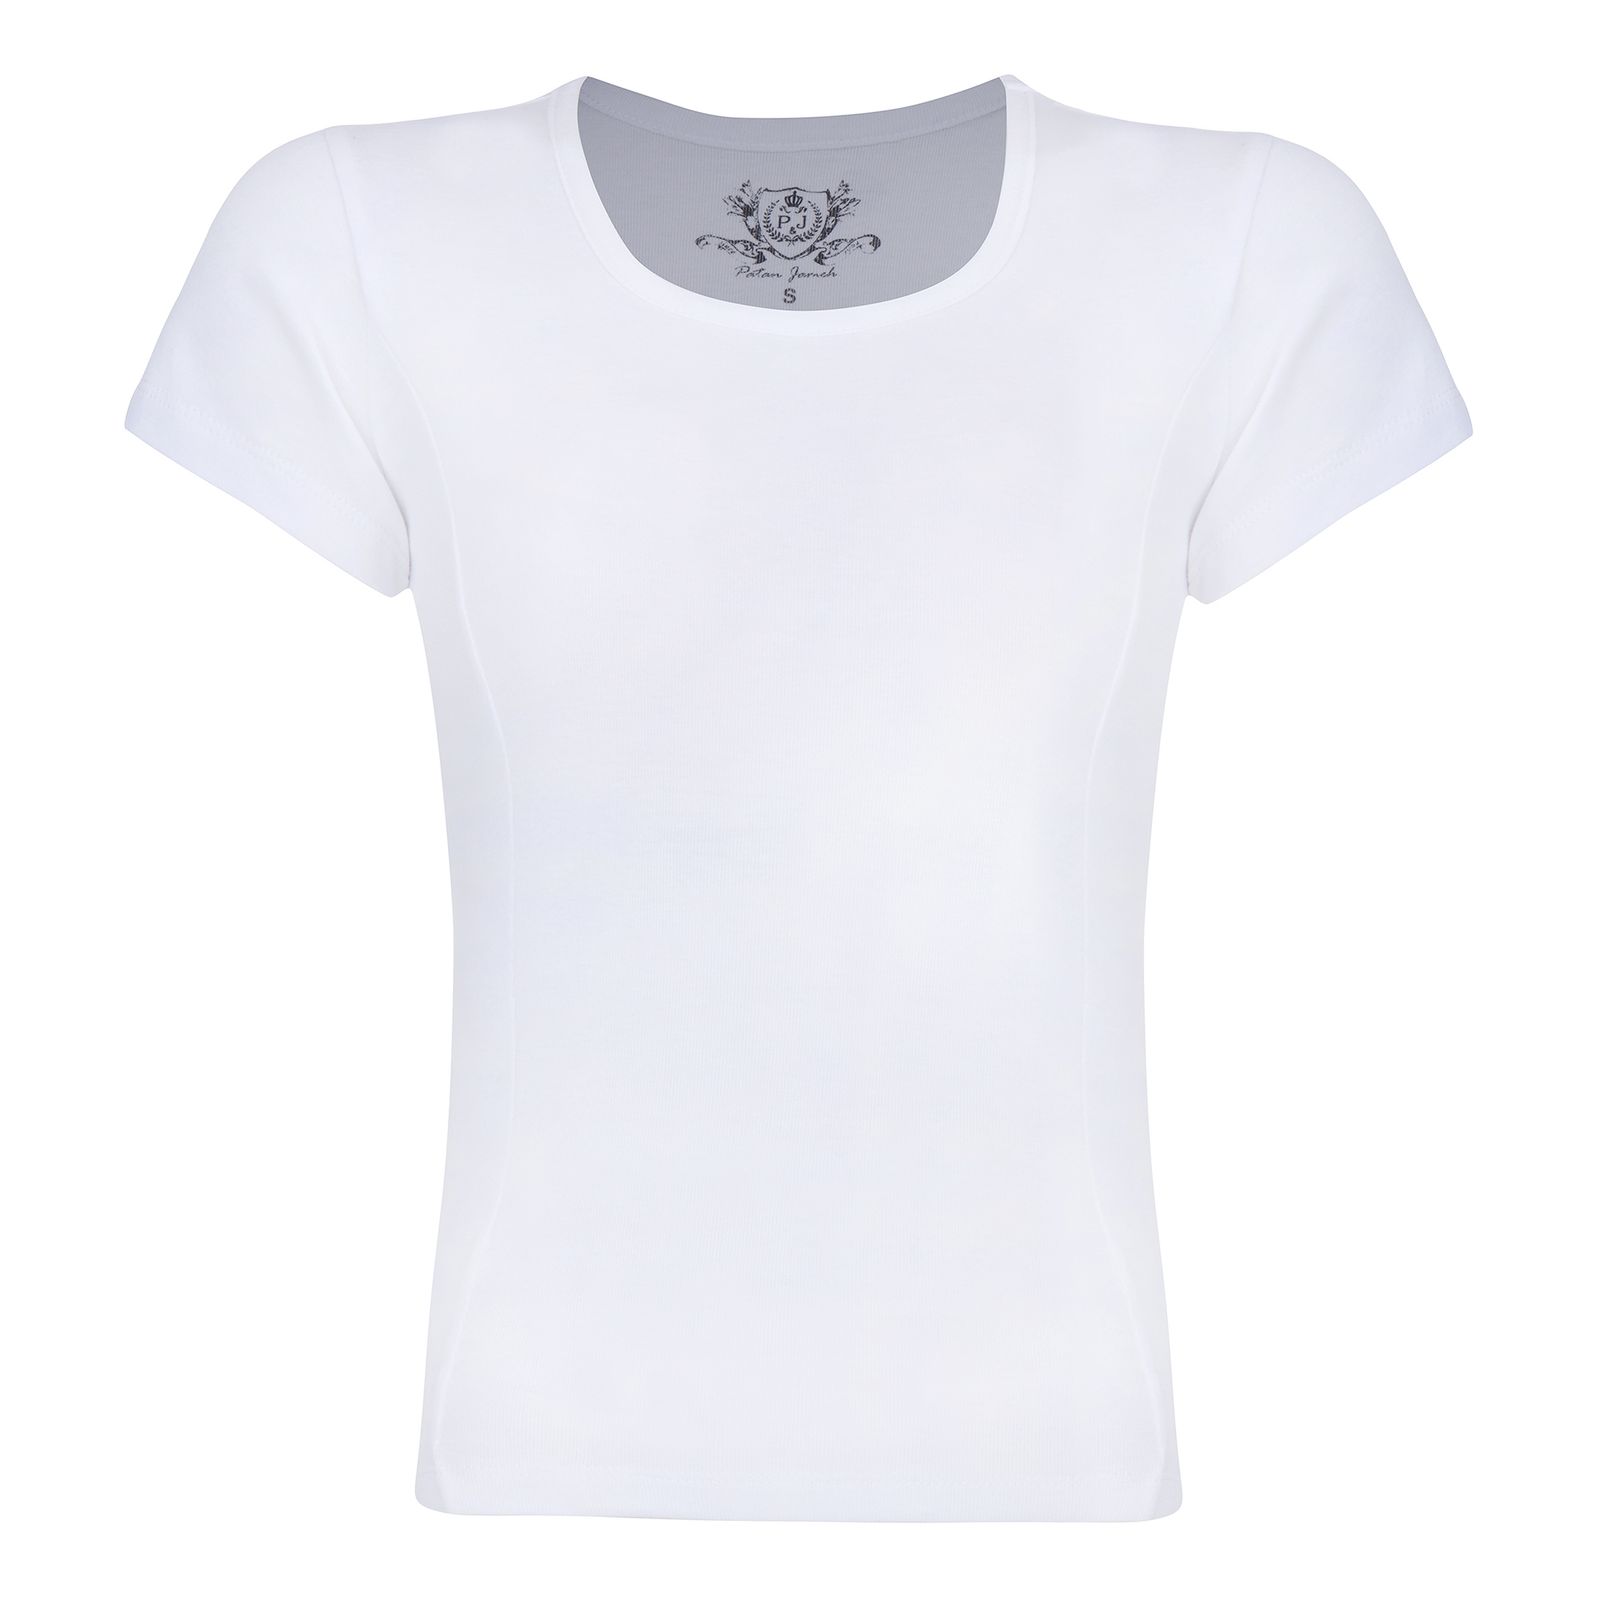 تی شرت آستین کوتاه زنانه پاتن جامه مدل فیانگو 131631020123000 رنگ سفید -  - 1